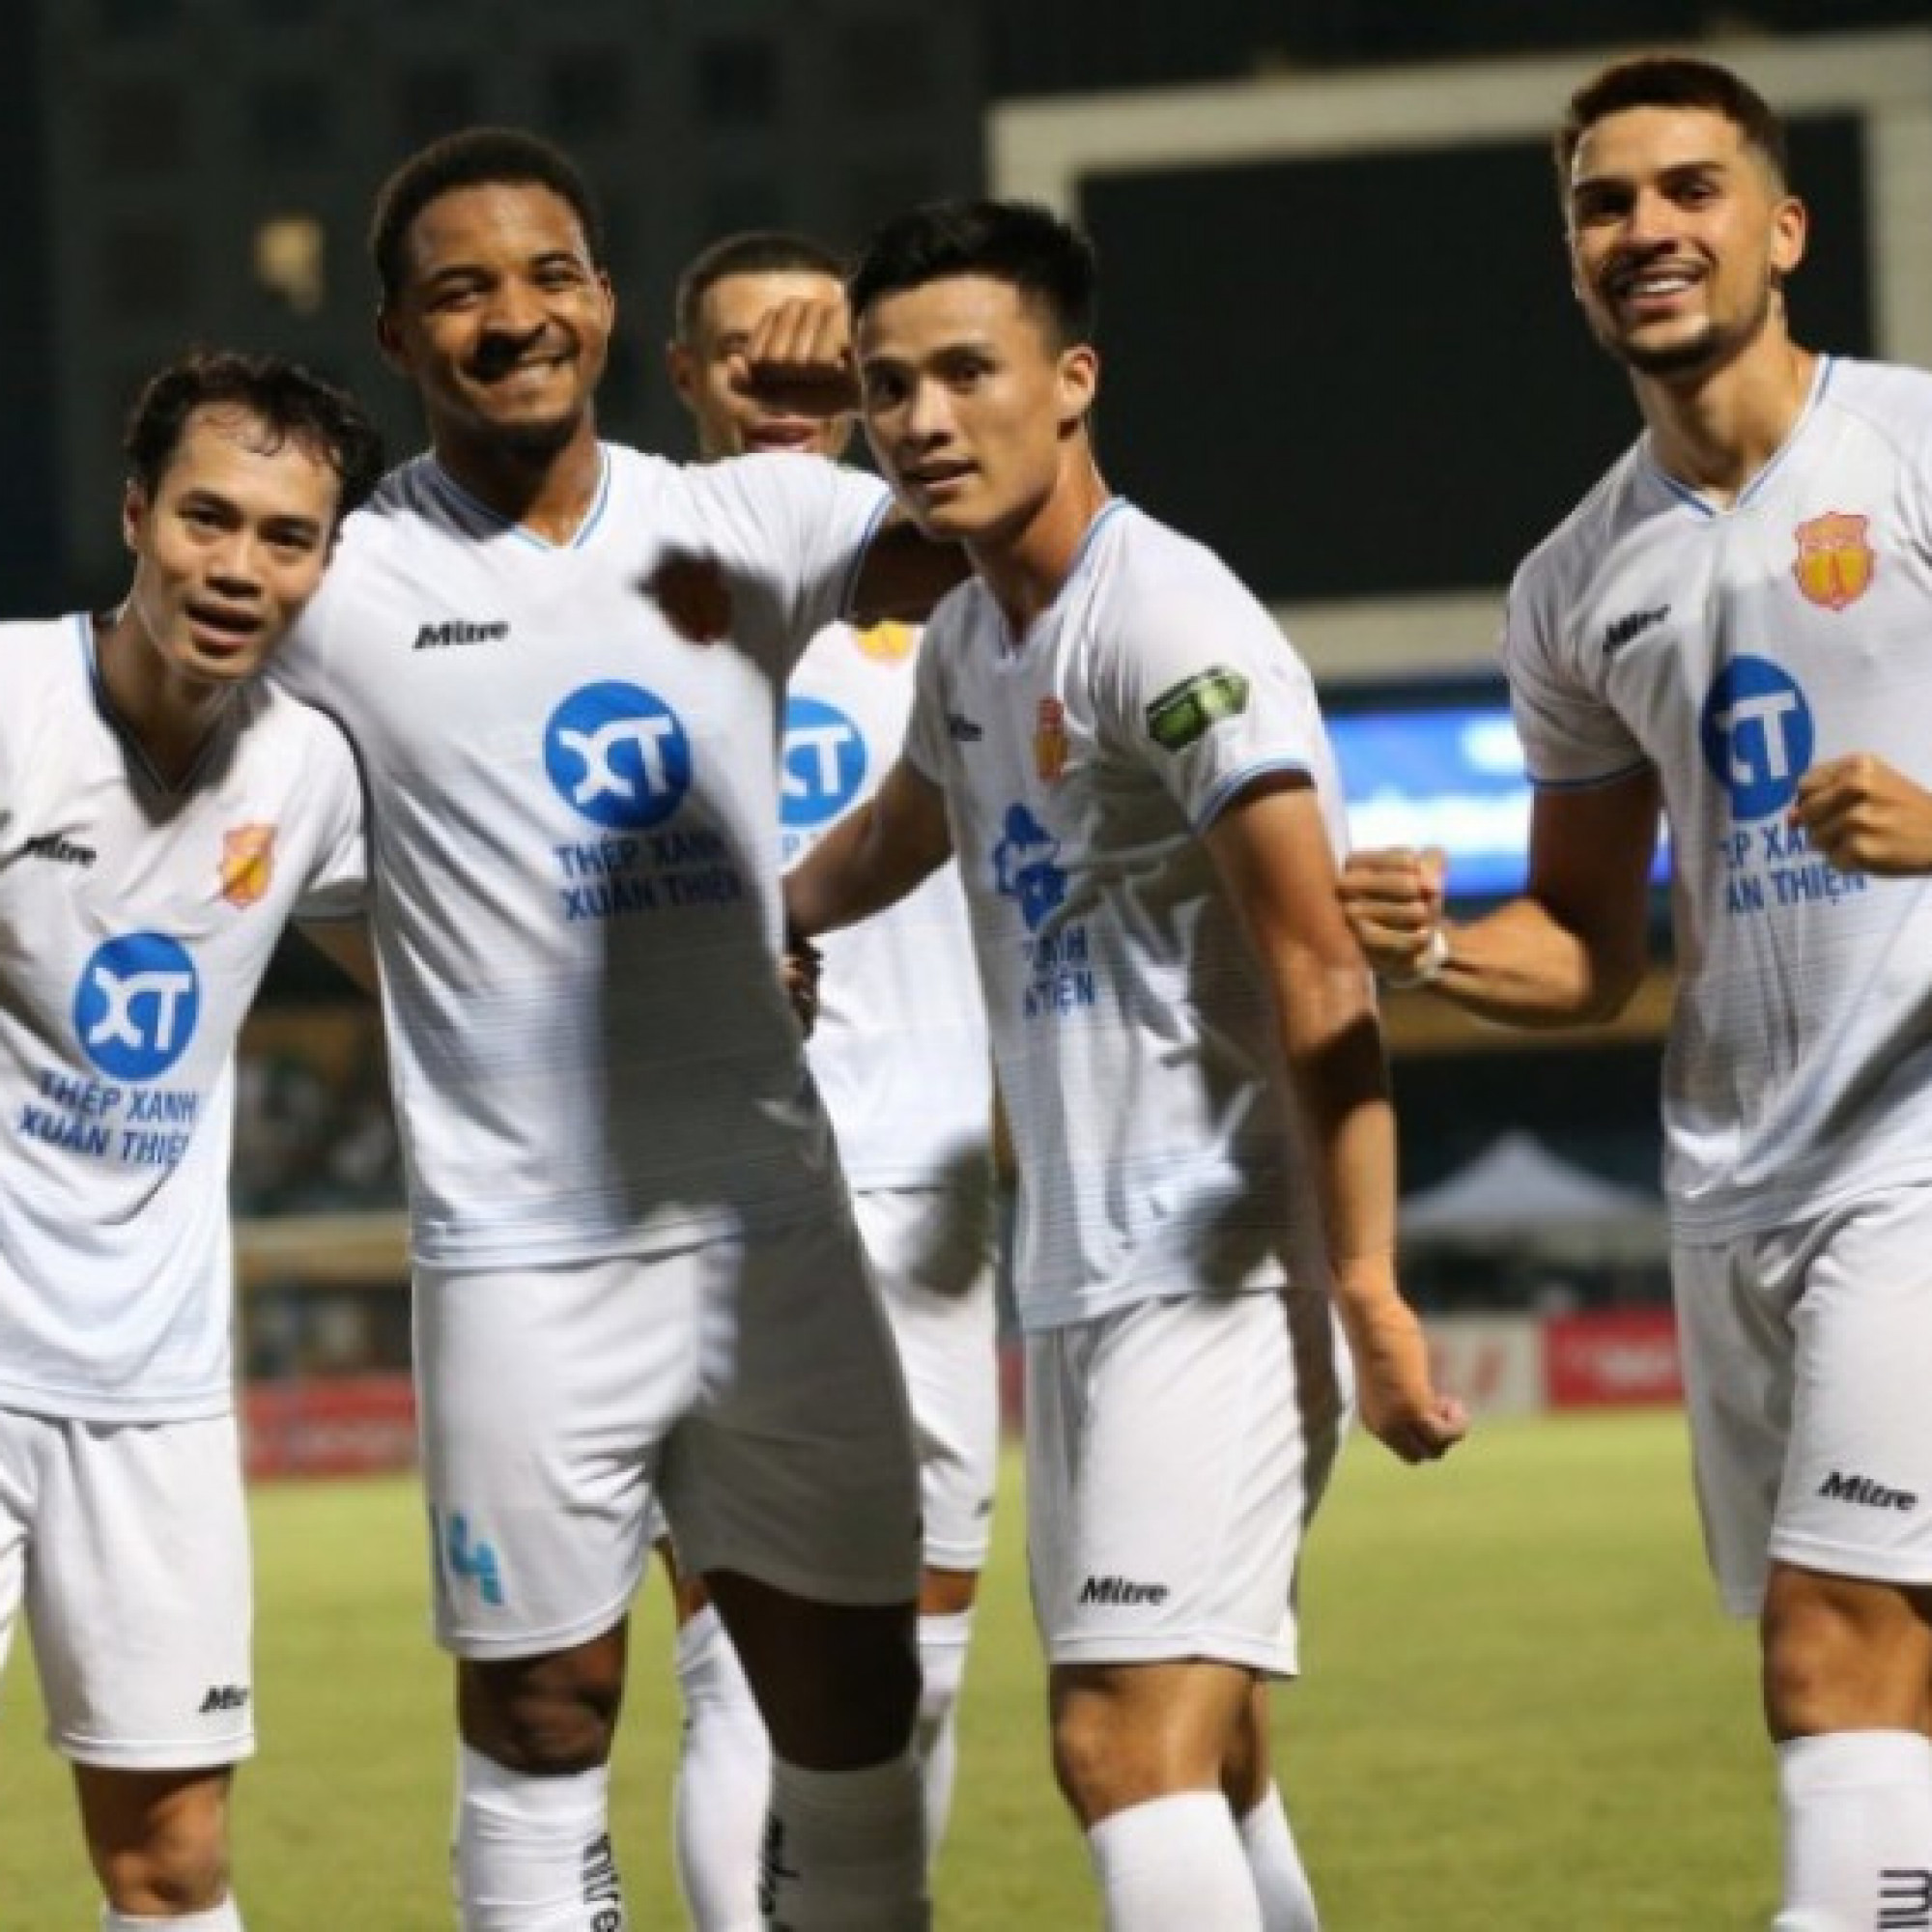  - Trực tiếp bóng đá Thể Công Viettel - Nam Định: Văn Toàn mở điểm (V-League)